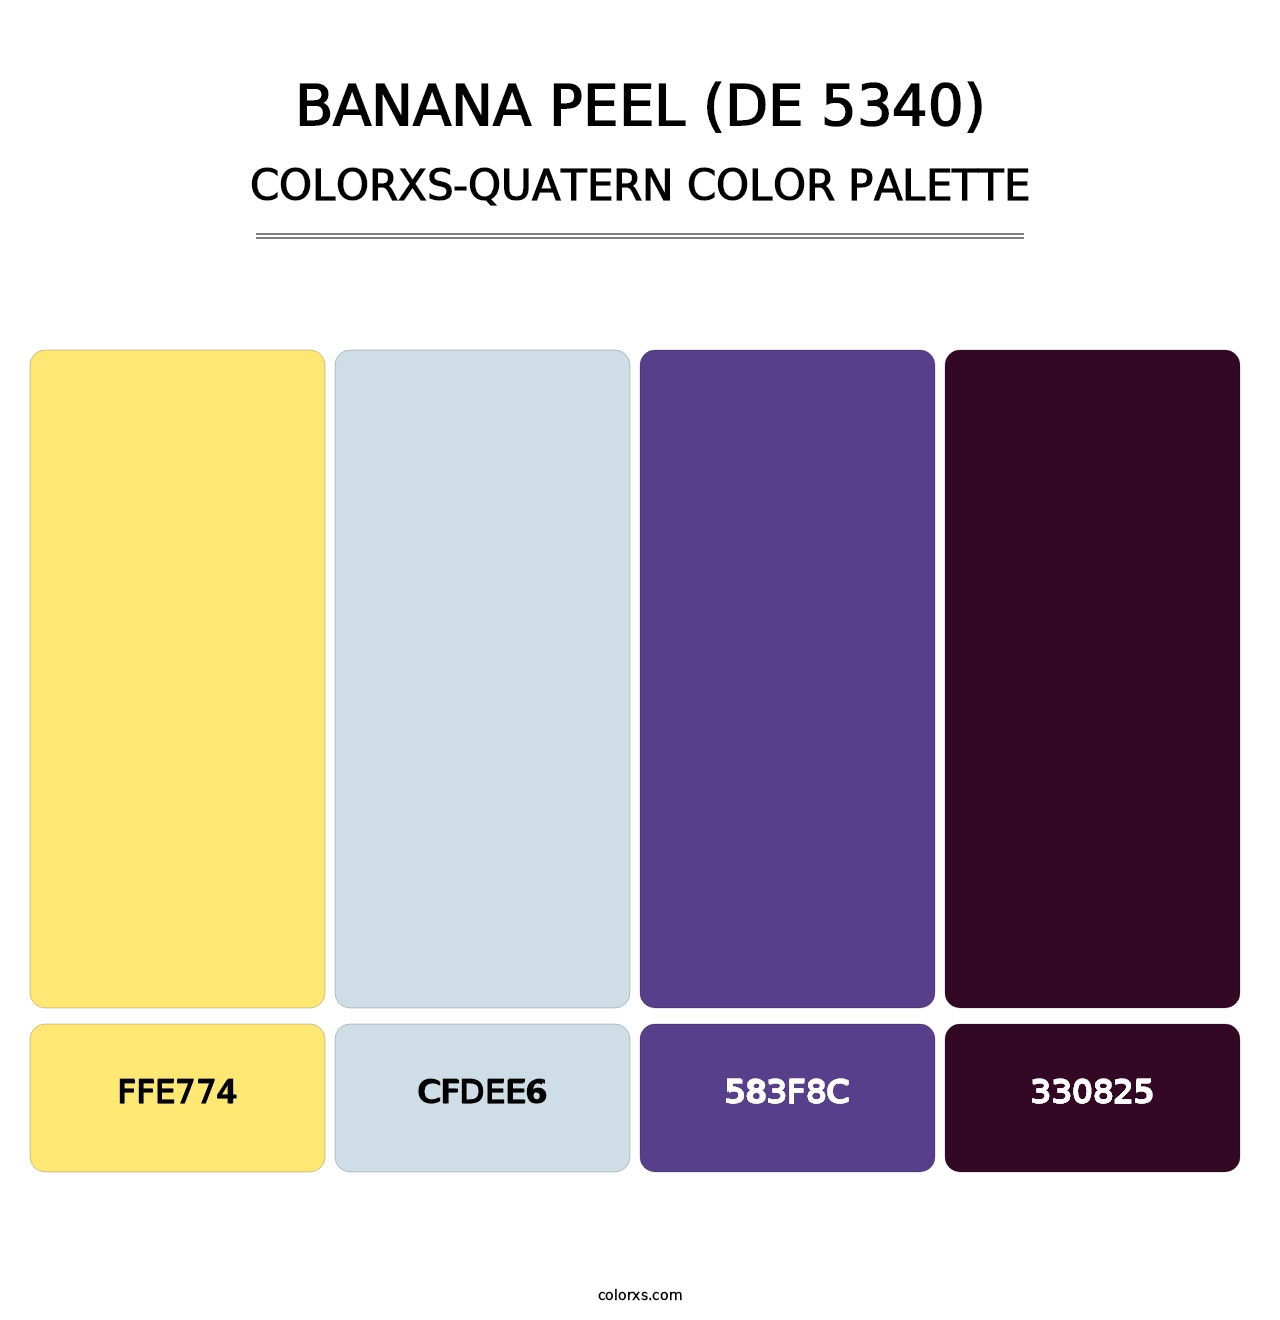 Banana Peel (DE 5340) - Colorxs Quatern Palette